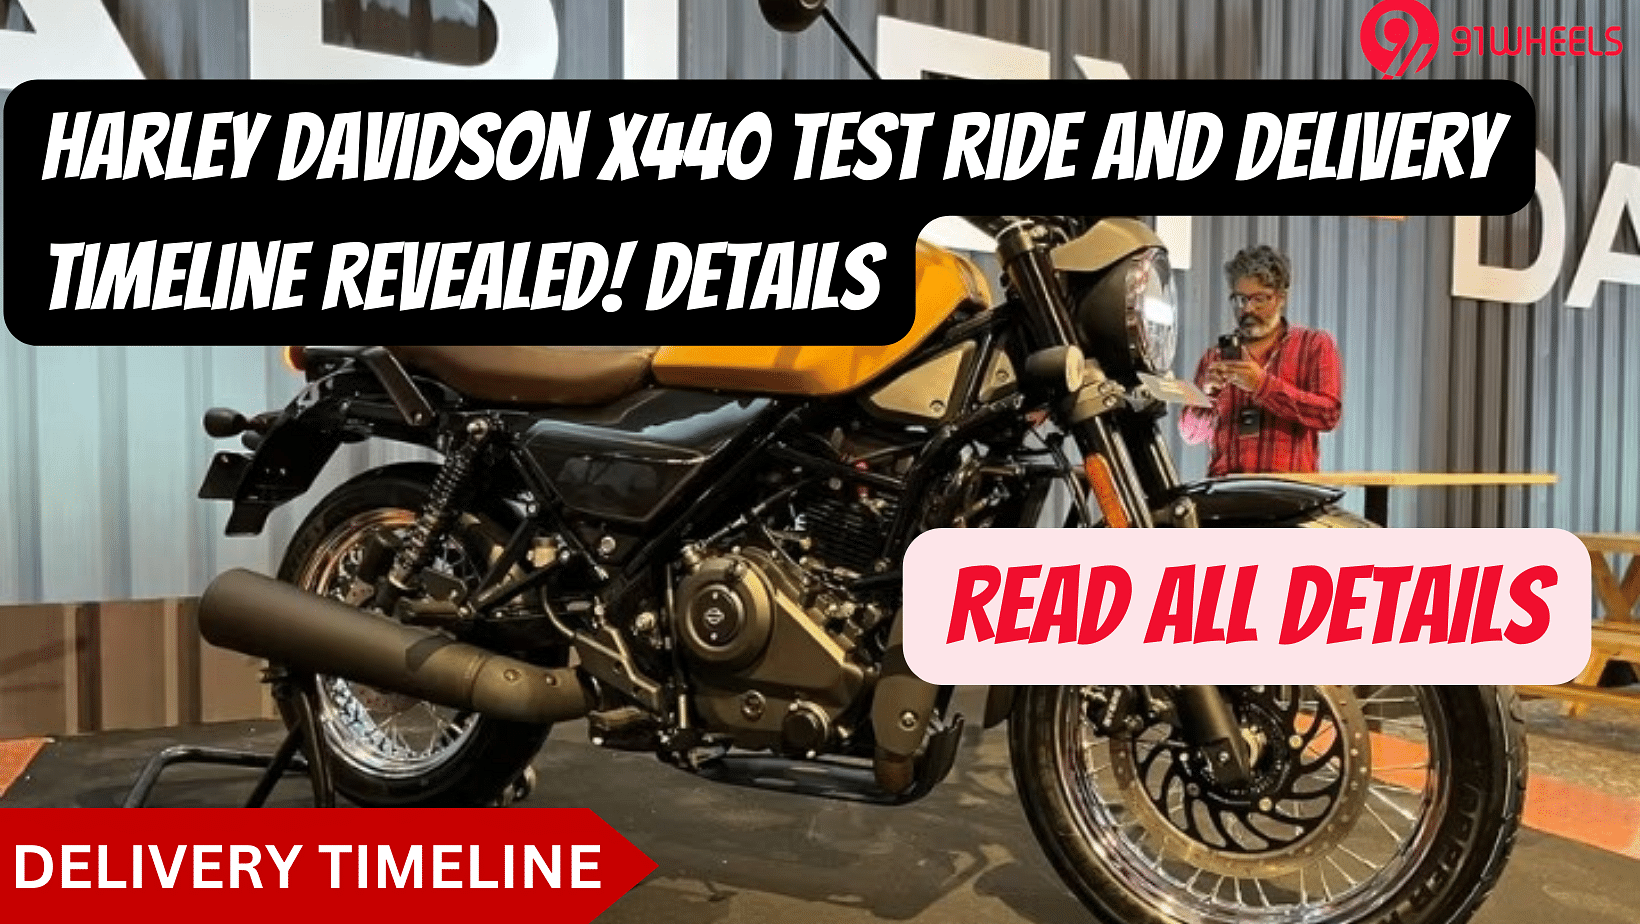 Harley Davidson X440 Test Ride and Delivery Timeline Revealed! Details